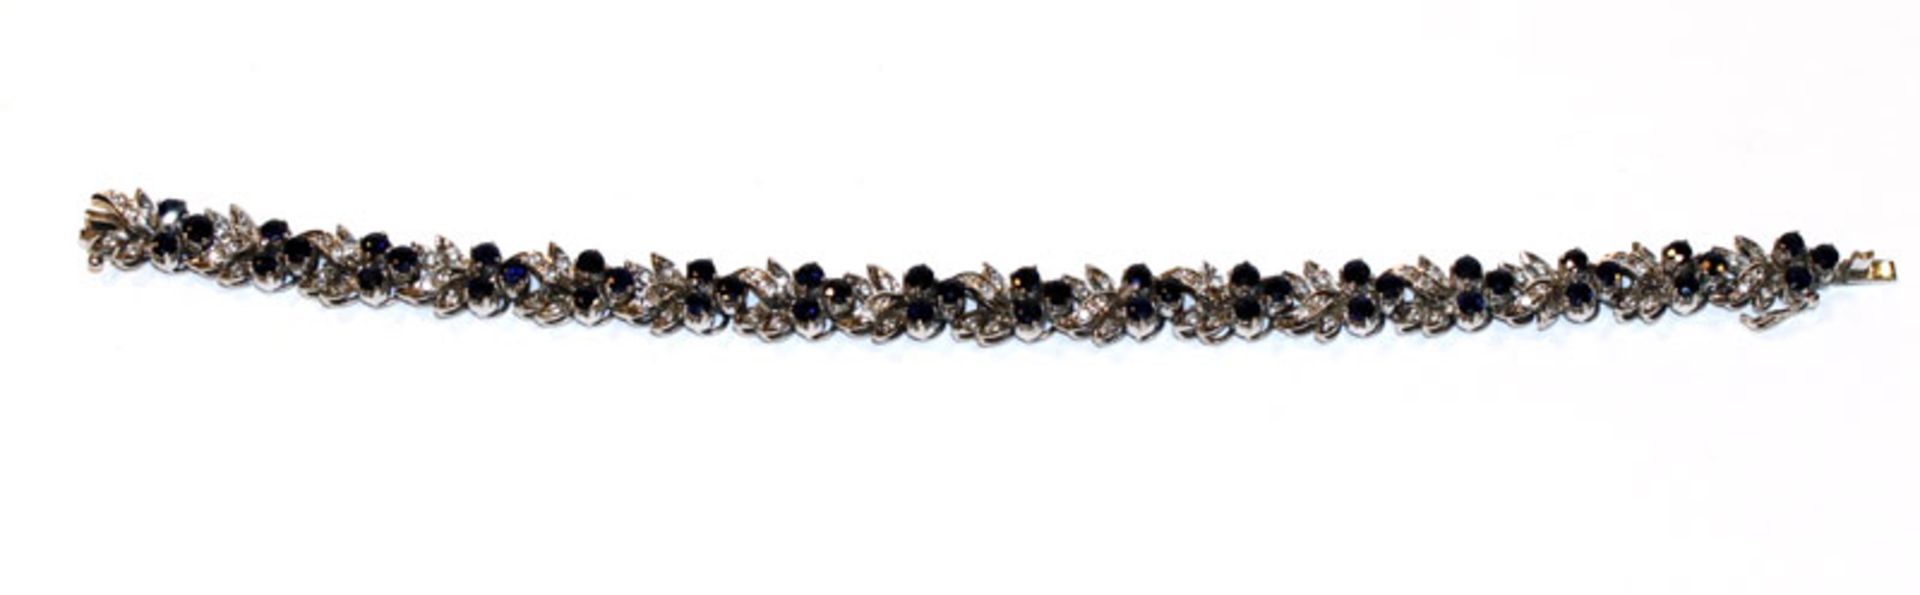 Dekoratives Silber (geprüft) Armband mit Safiren in Blütenform, L 21 cm